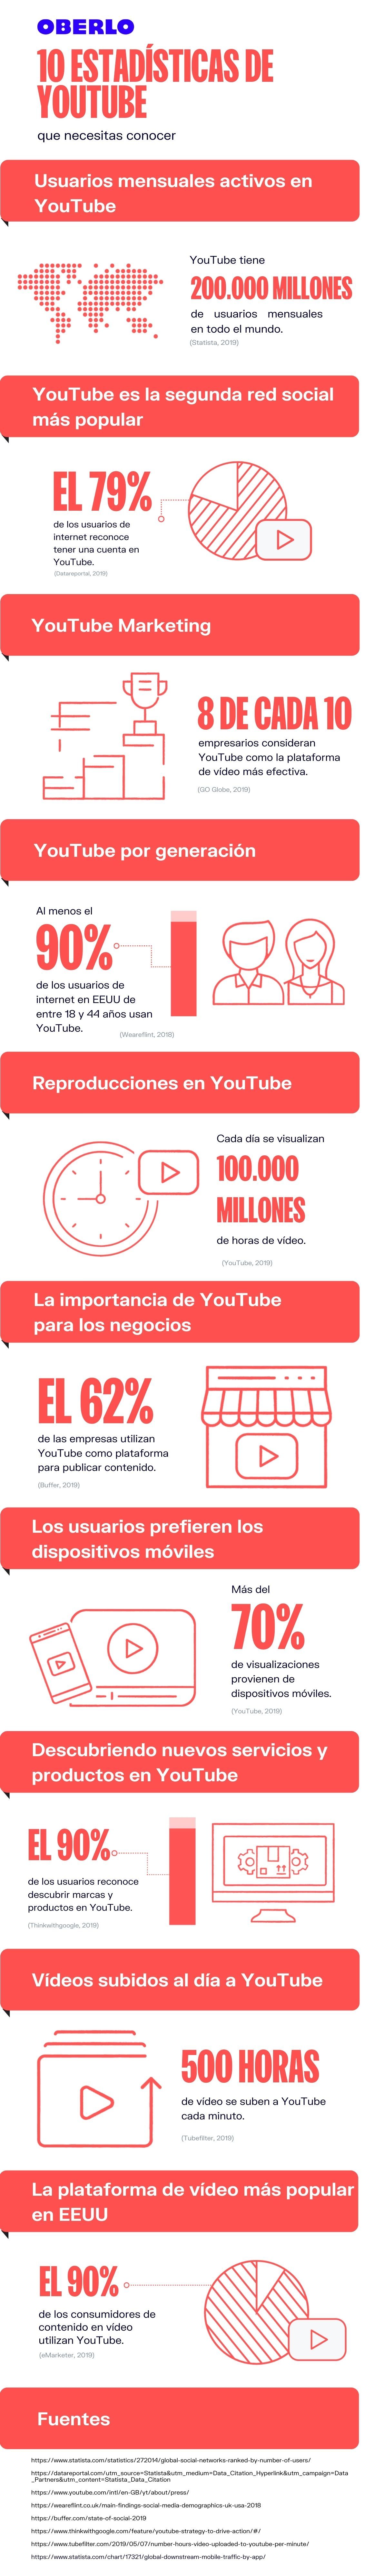 סטטיסטיקה של Youtube